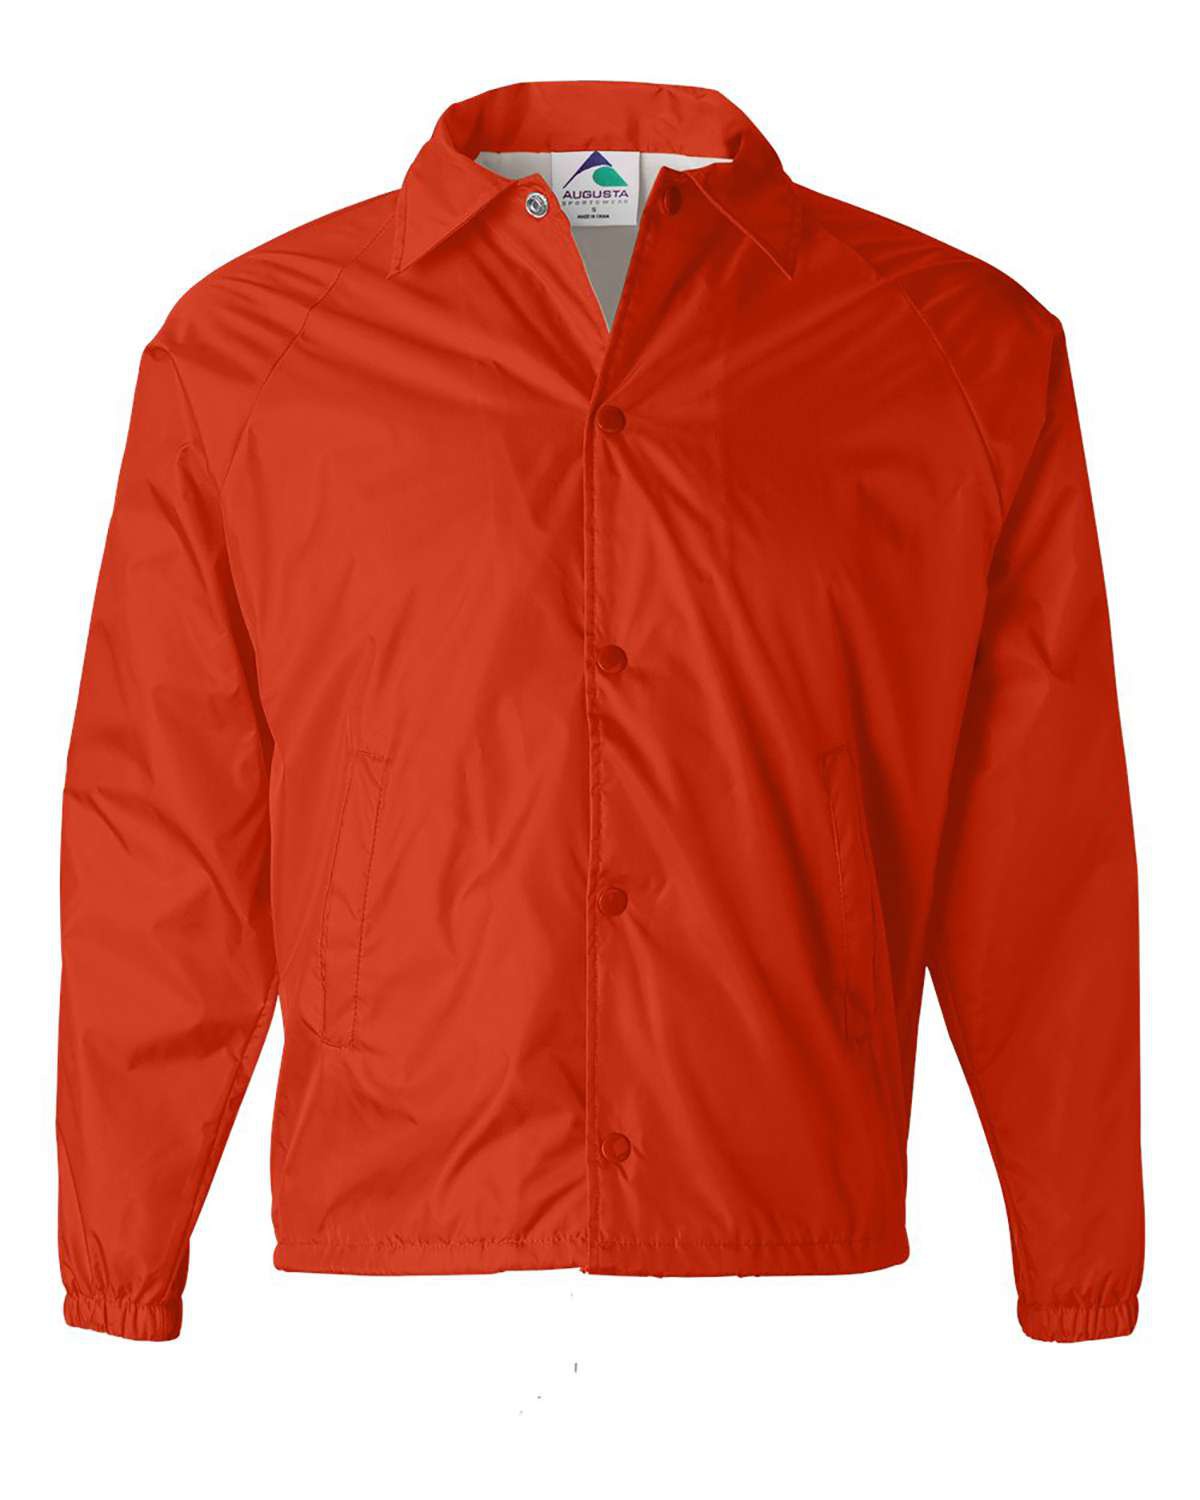 'Augusta Sportswear 3100 Coach's Jacket'